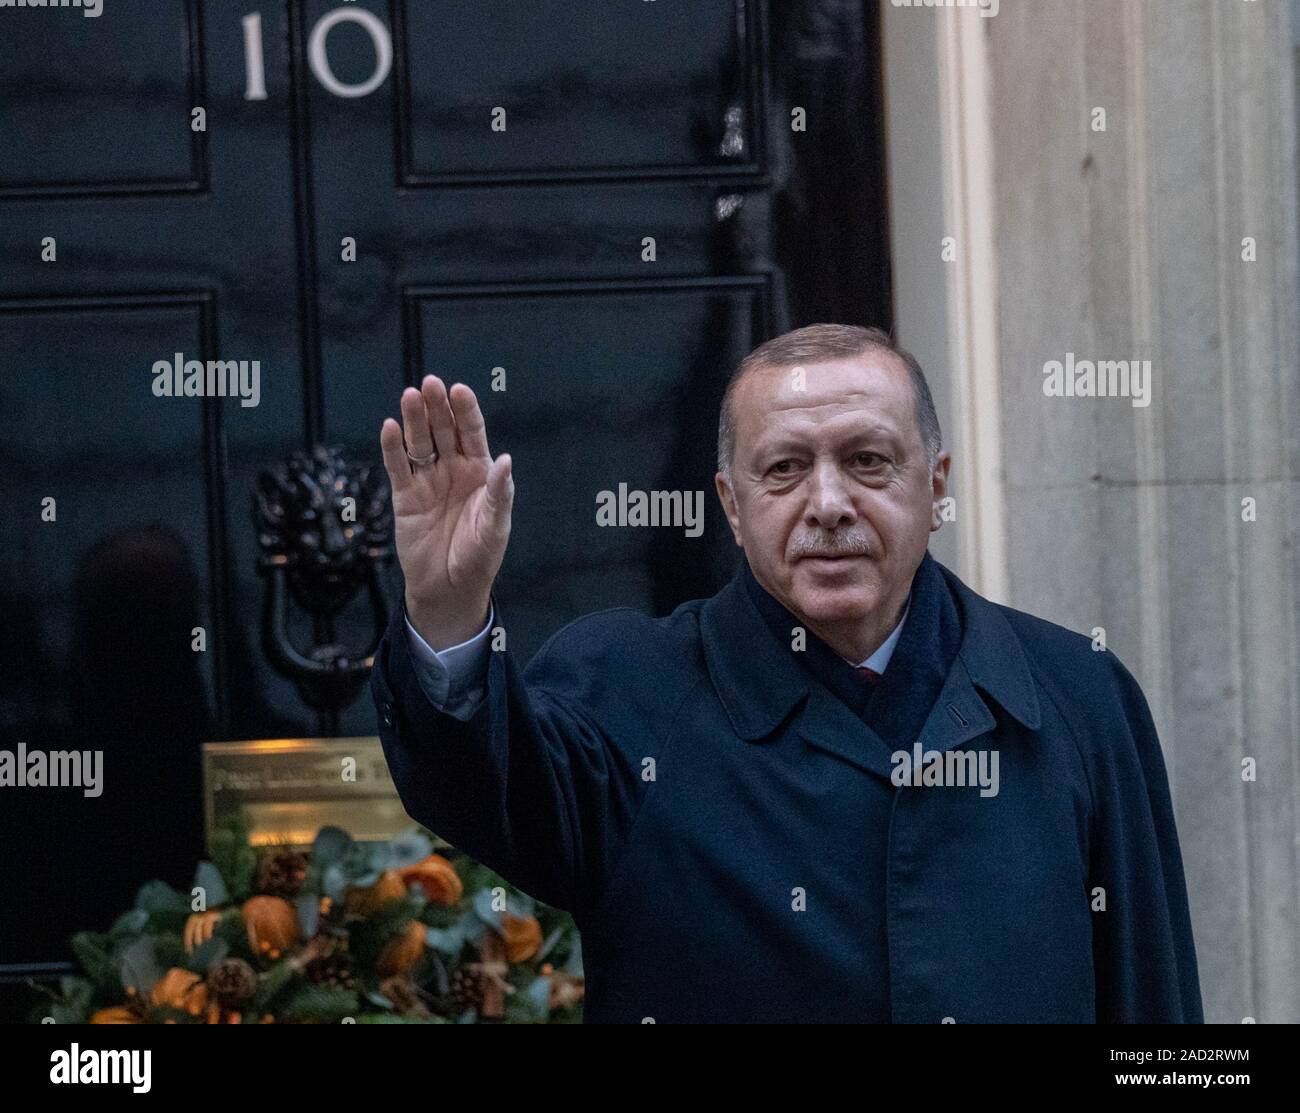 31/12/2019 London UK 3e les dirigeants de l'OTAN arrivent au 10 Downing Street durant le sommet de l'OTAN, Recep Tayyip Erdogan, Président de la Turquie, de crédit Ian DavidsonAlamy Live News Banque D'Images